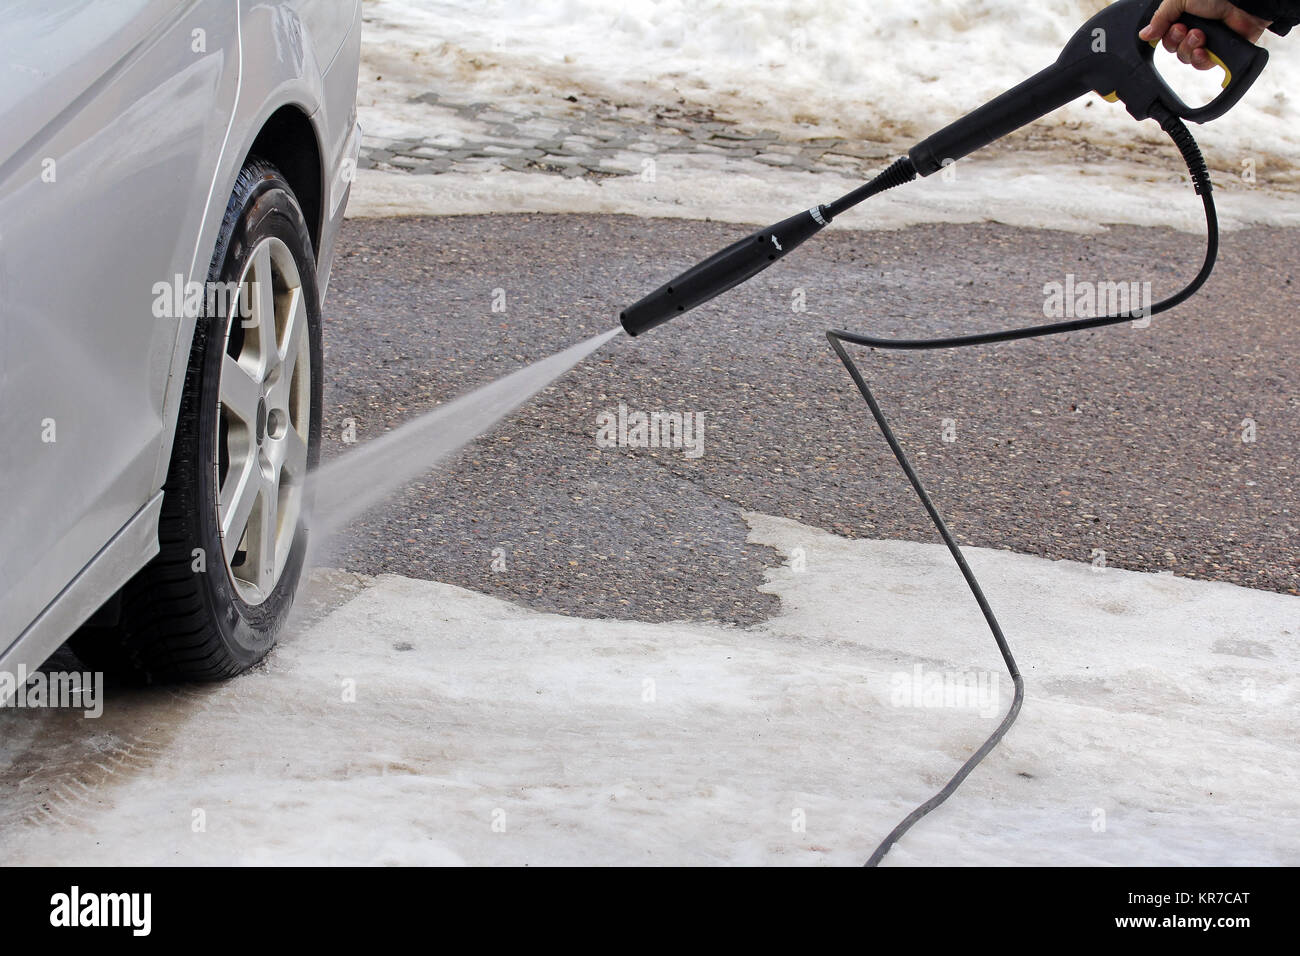 Lavado de coches en invierno - un hombre lava su coche Foto de stock